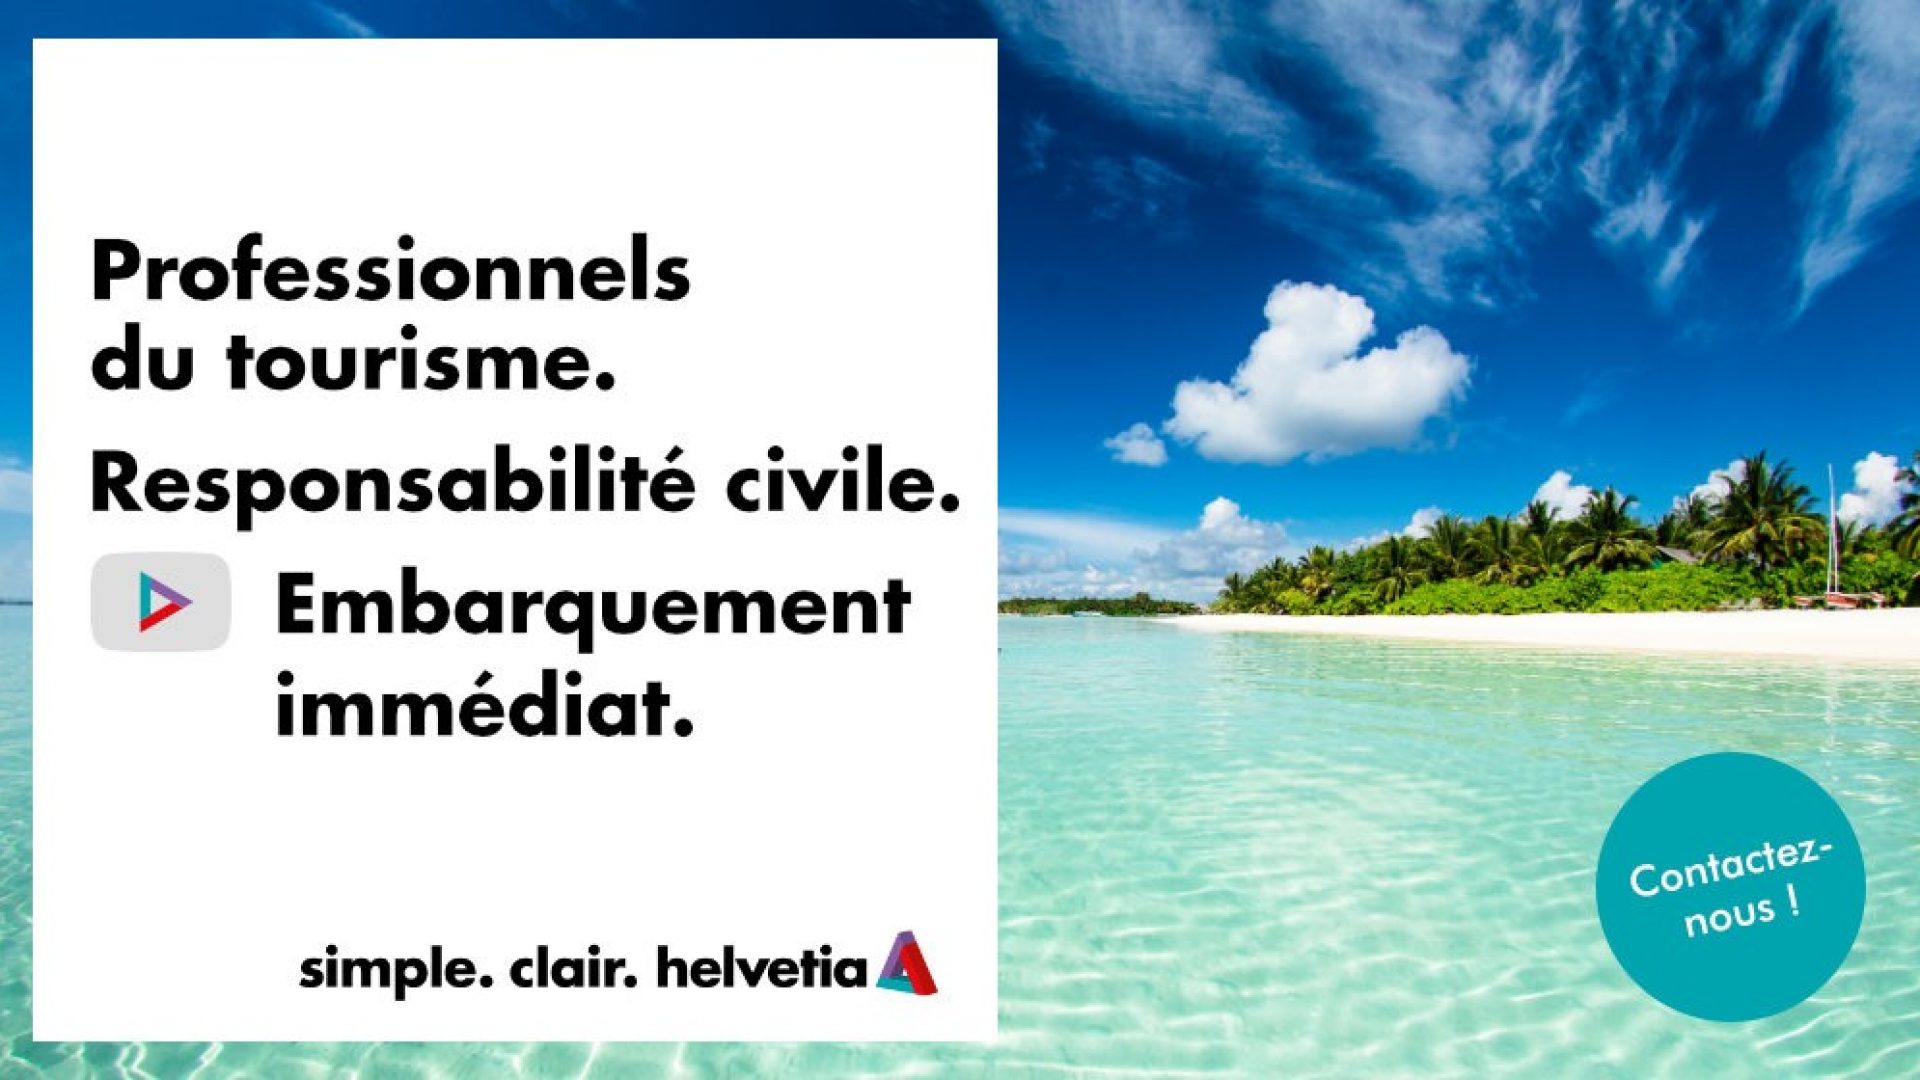 Responsabilite-civile-Tourisme-par-Helvetia-02